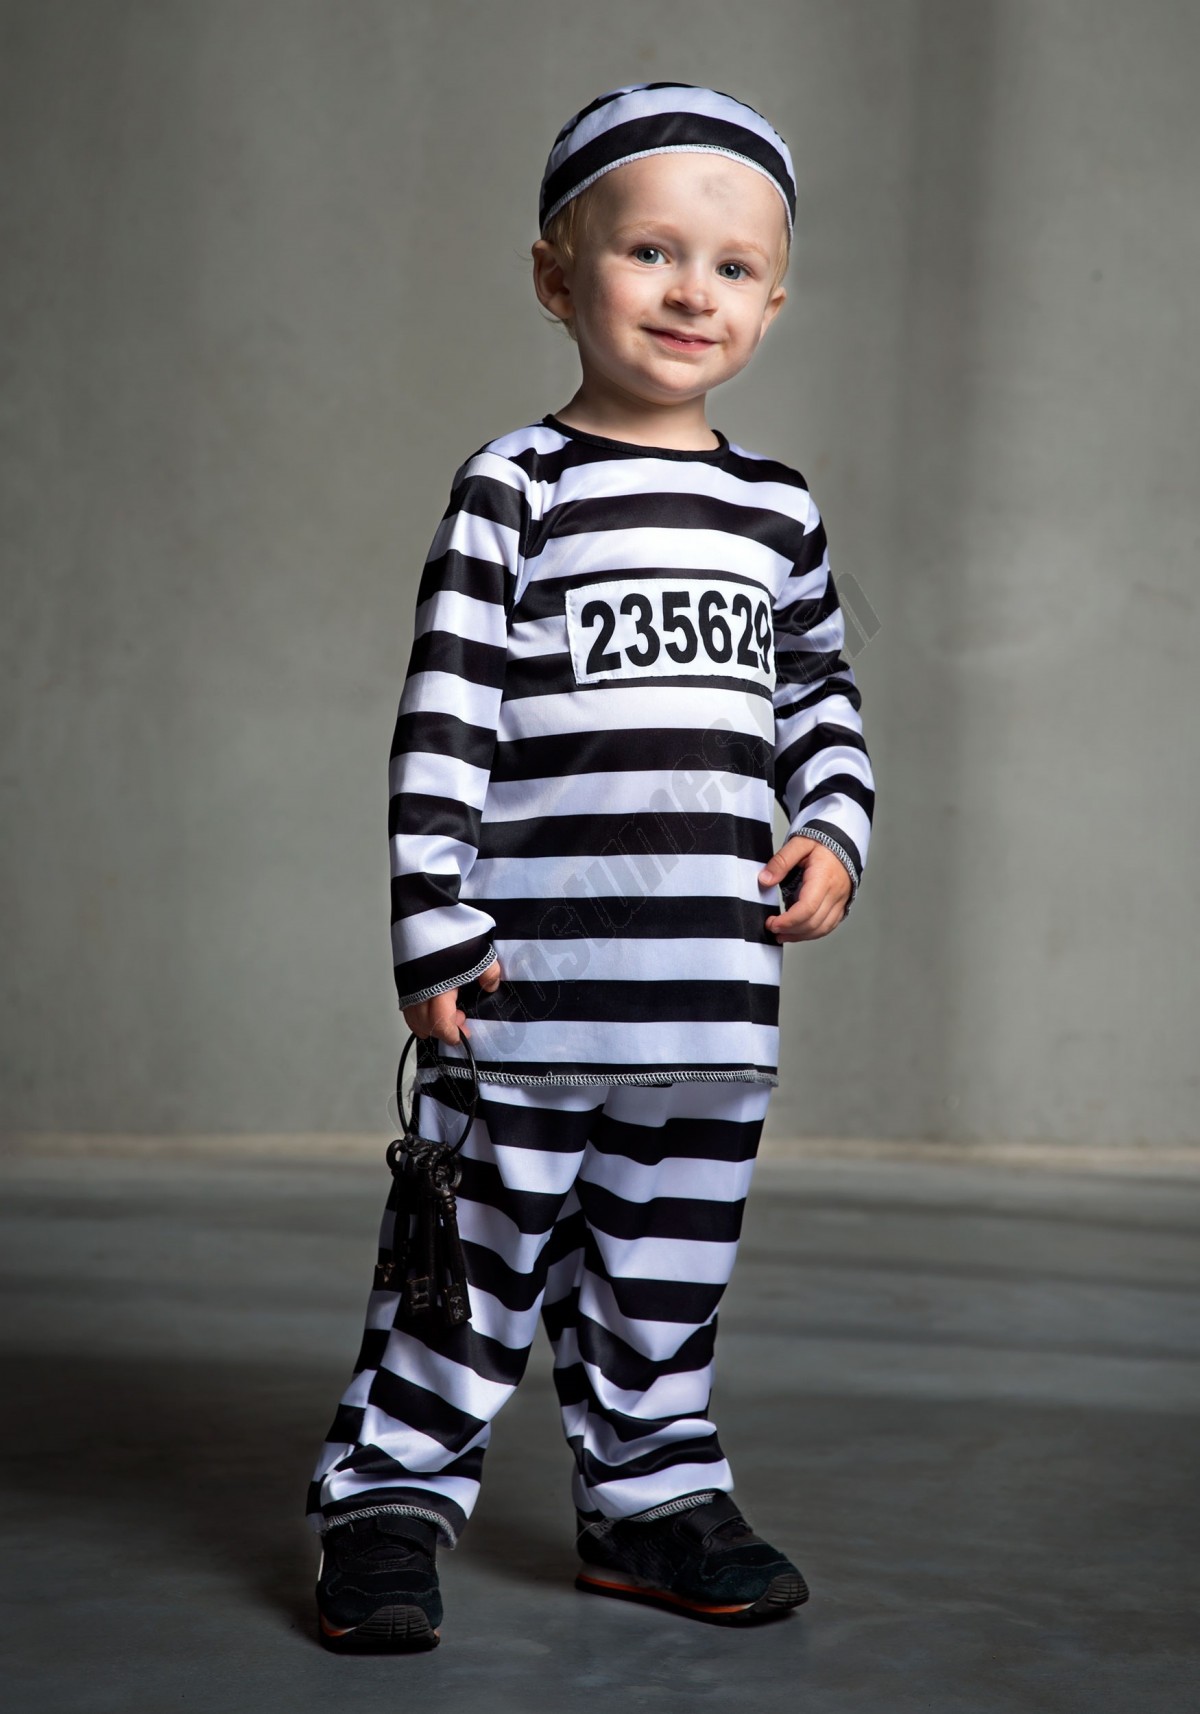 Toddler Prisoner Costume Promotions - -0